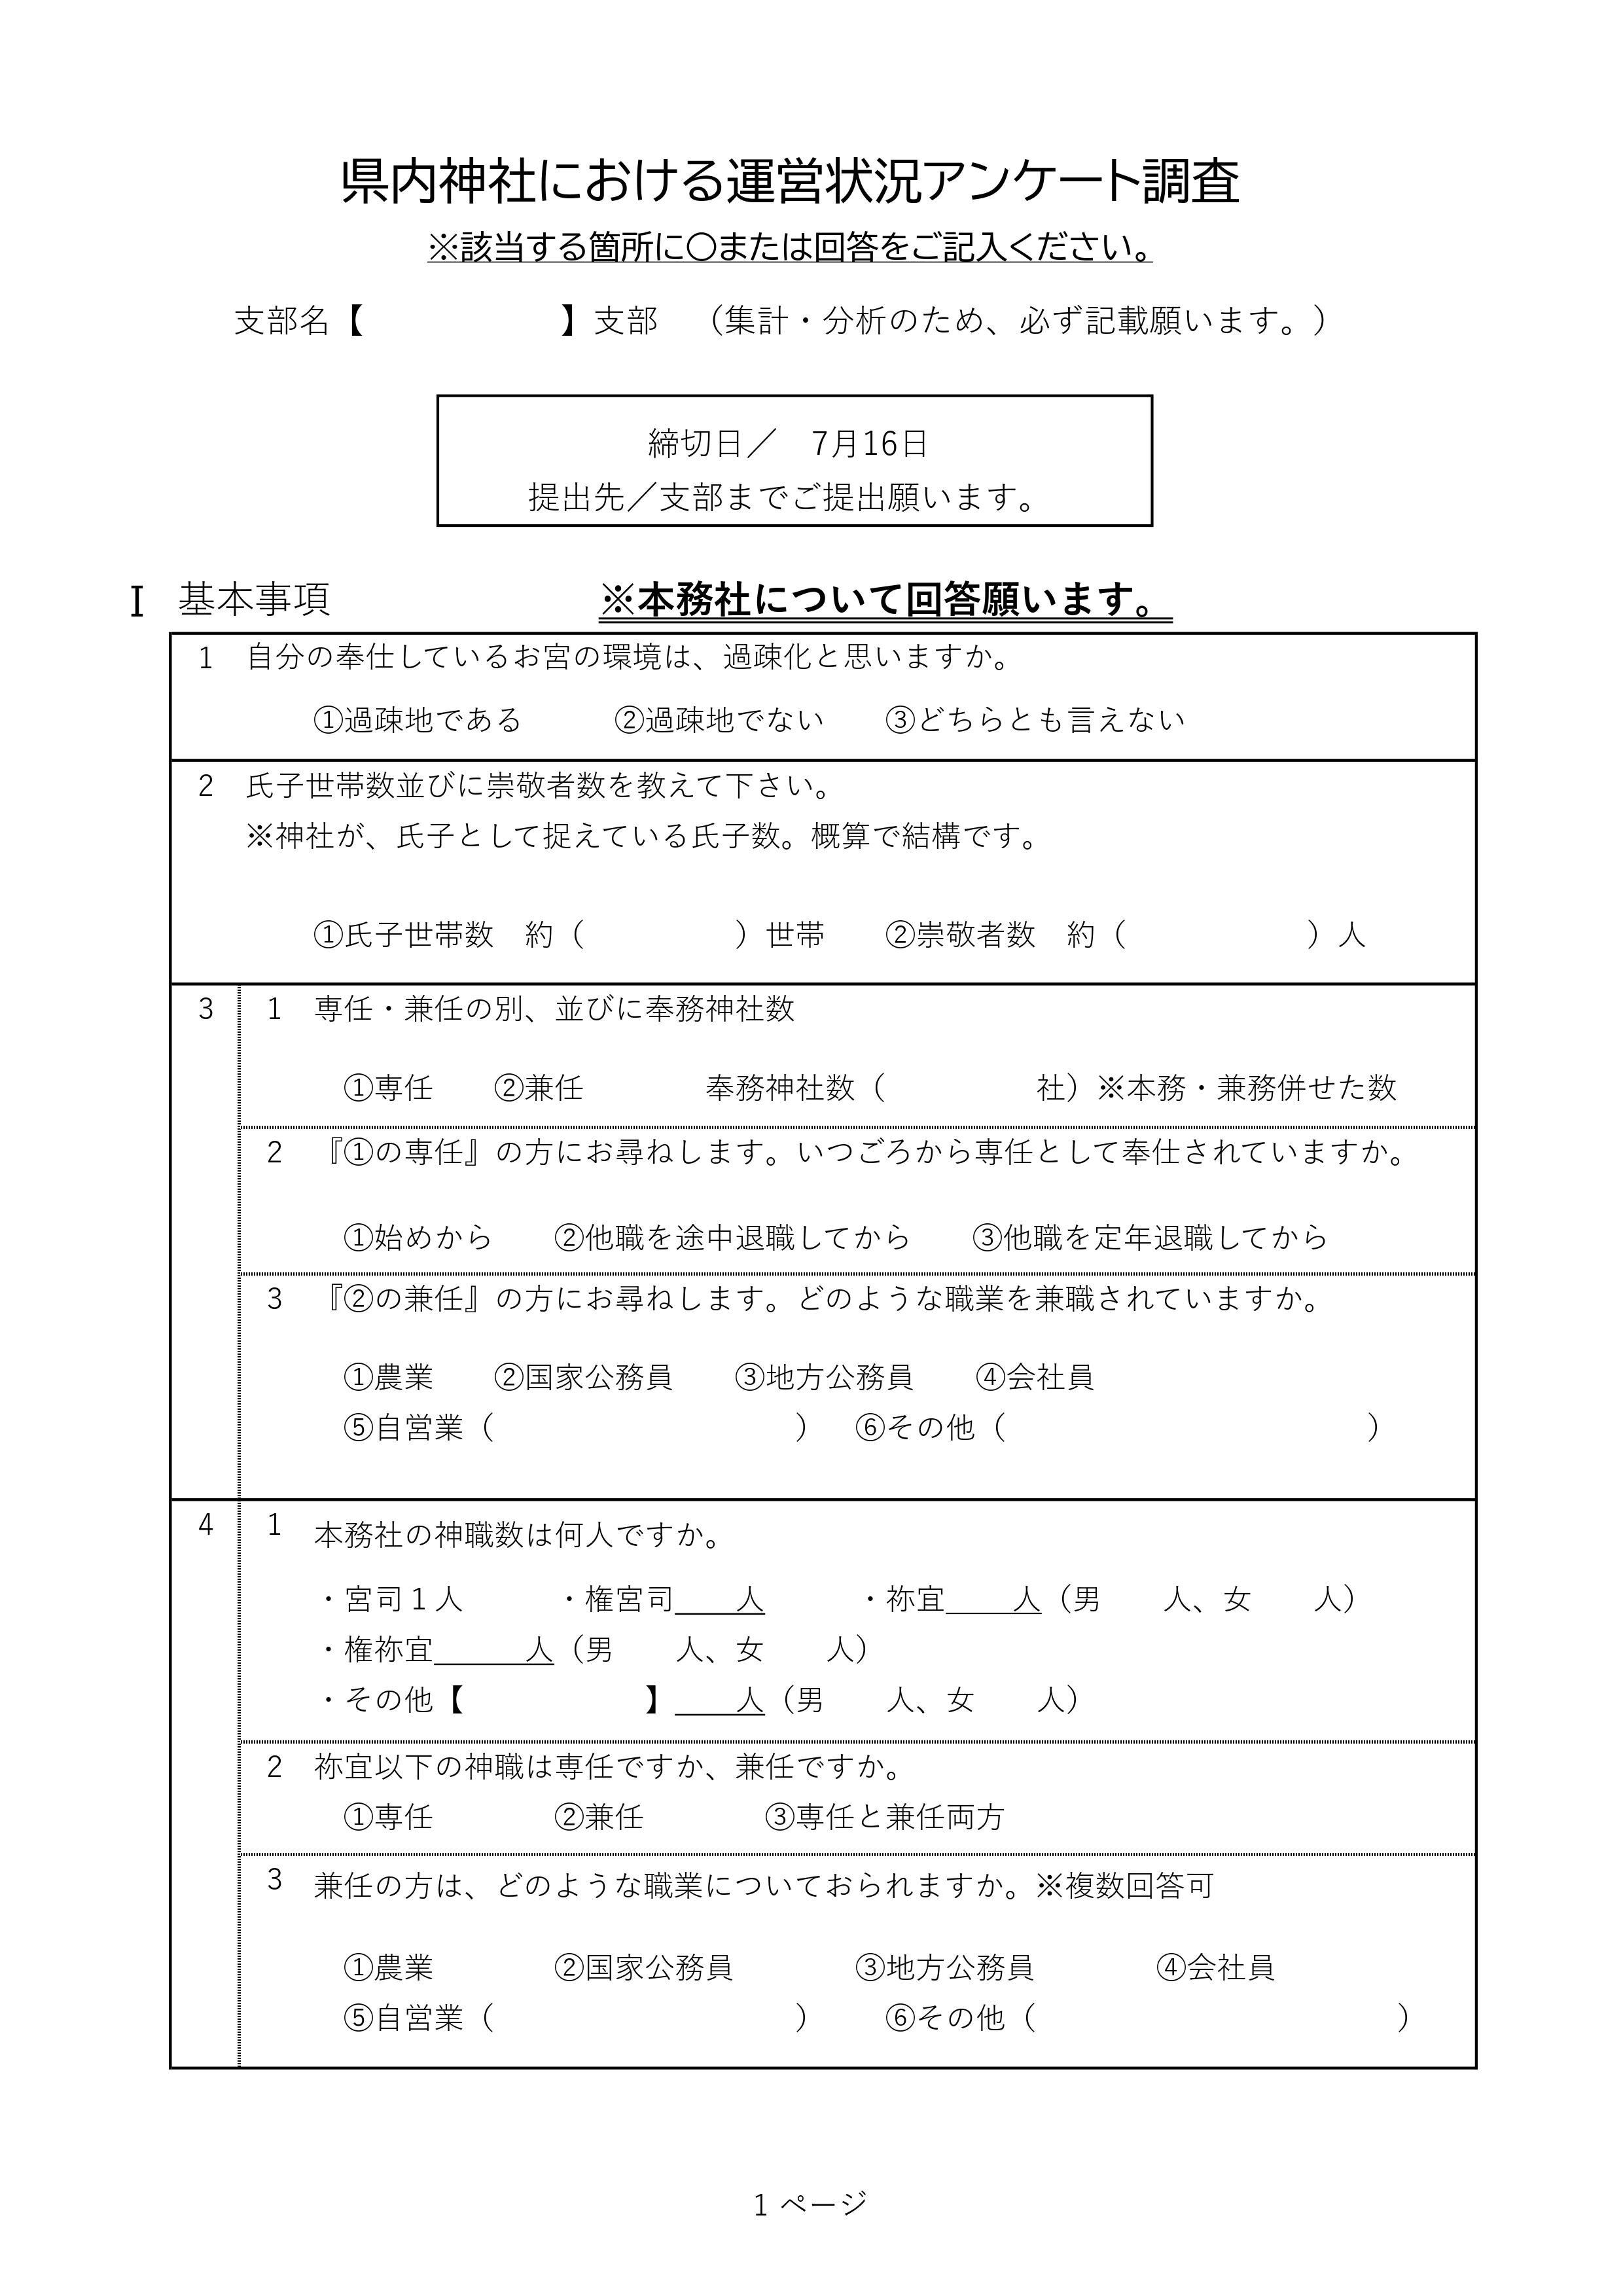 _『県内神社における運営状況アンケート調査』-画像-0.jpg